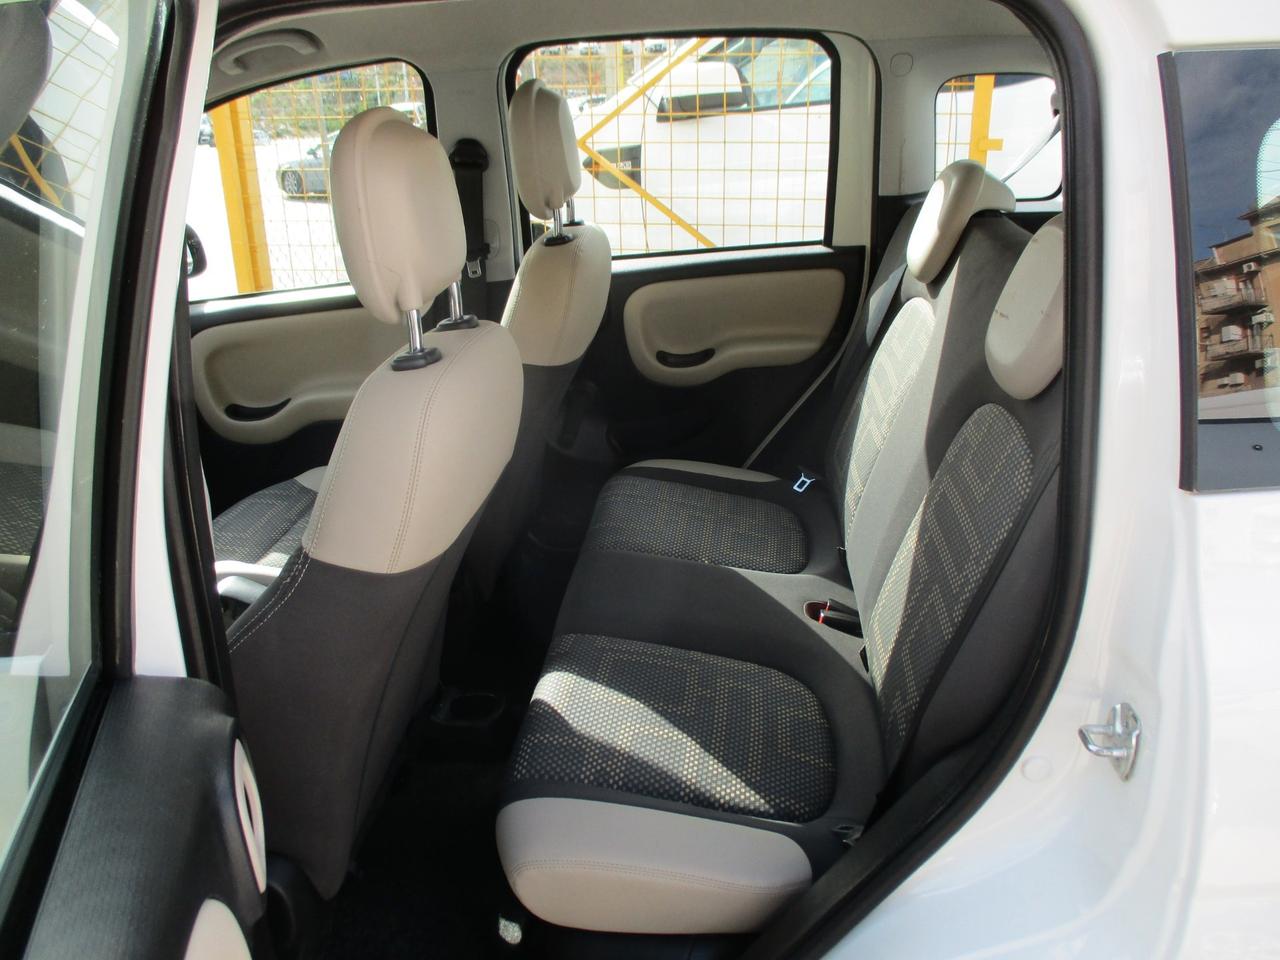 Fiat Panda 1.3 MJT 75 CV 4x4 2015